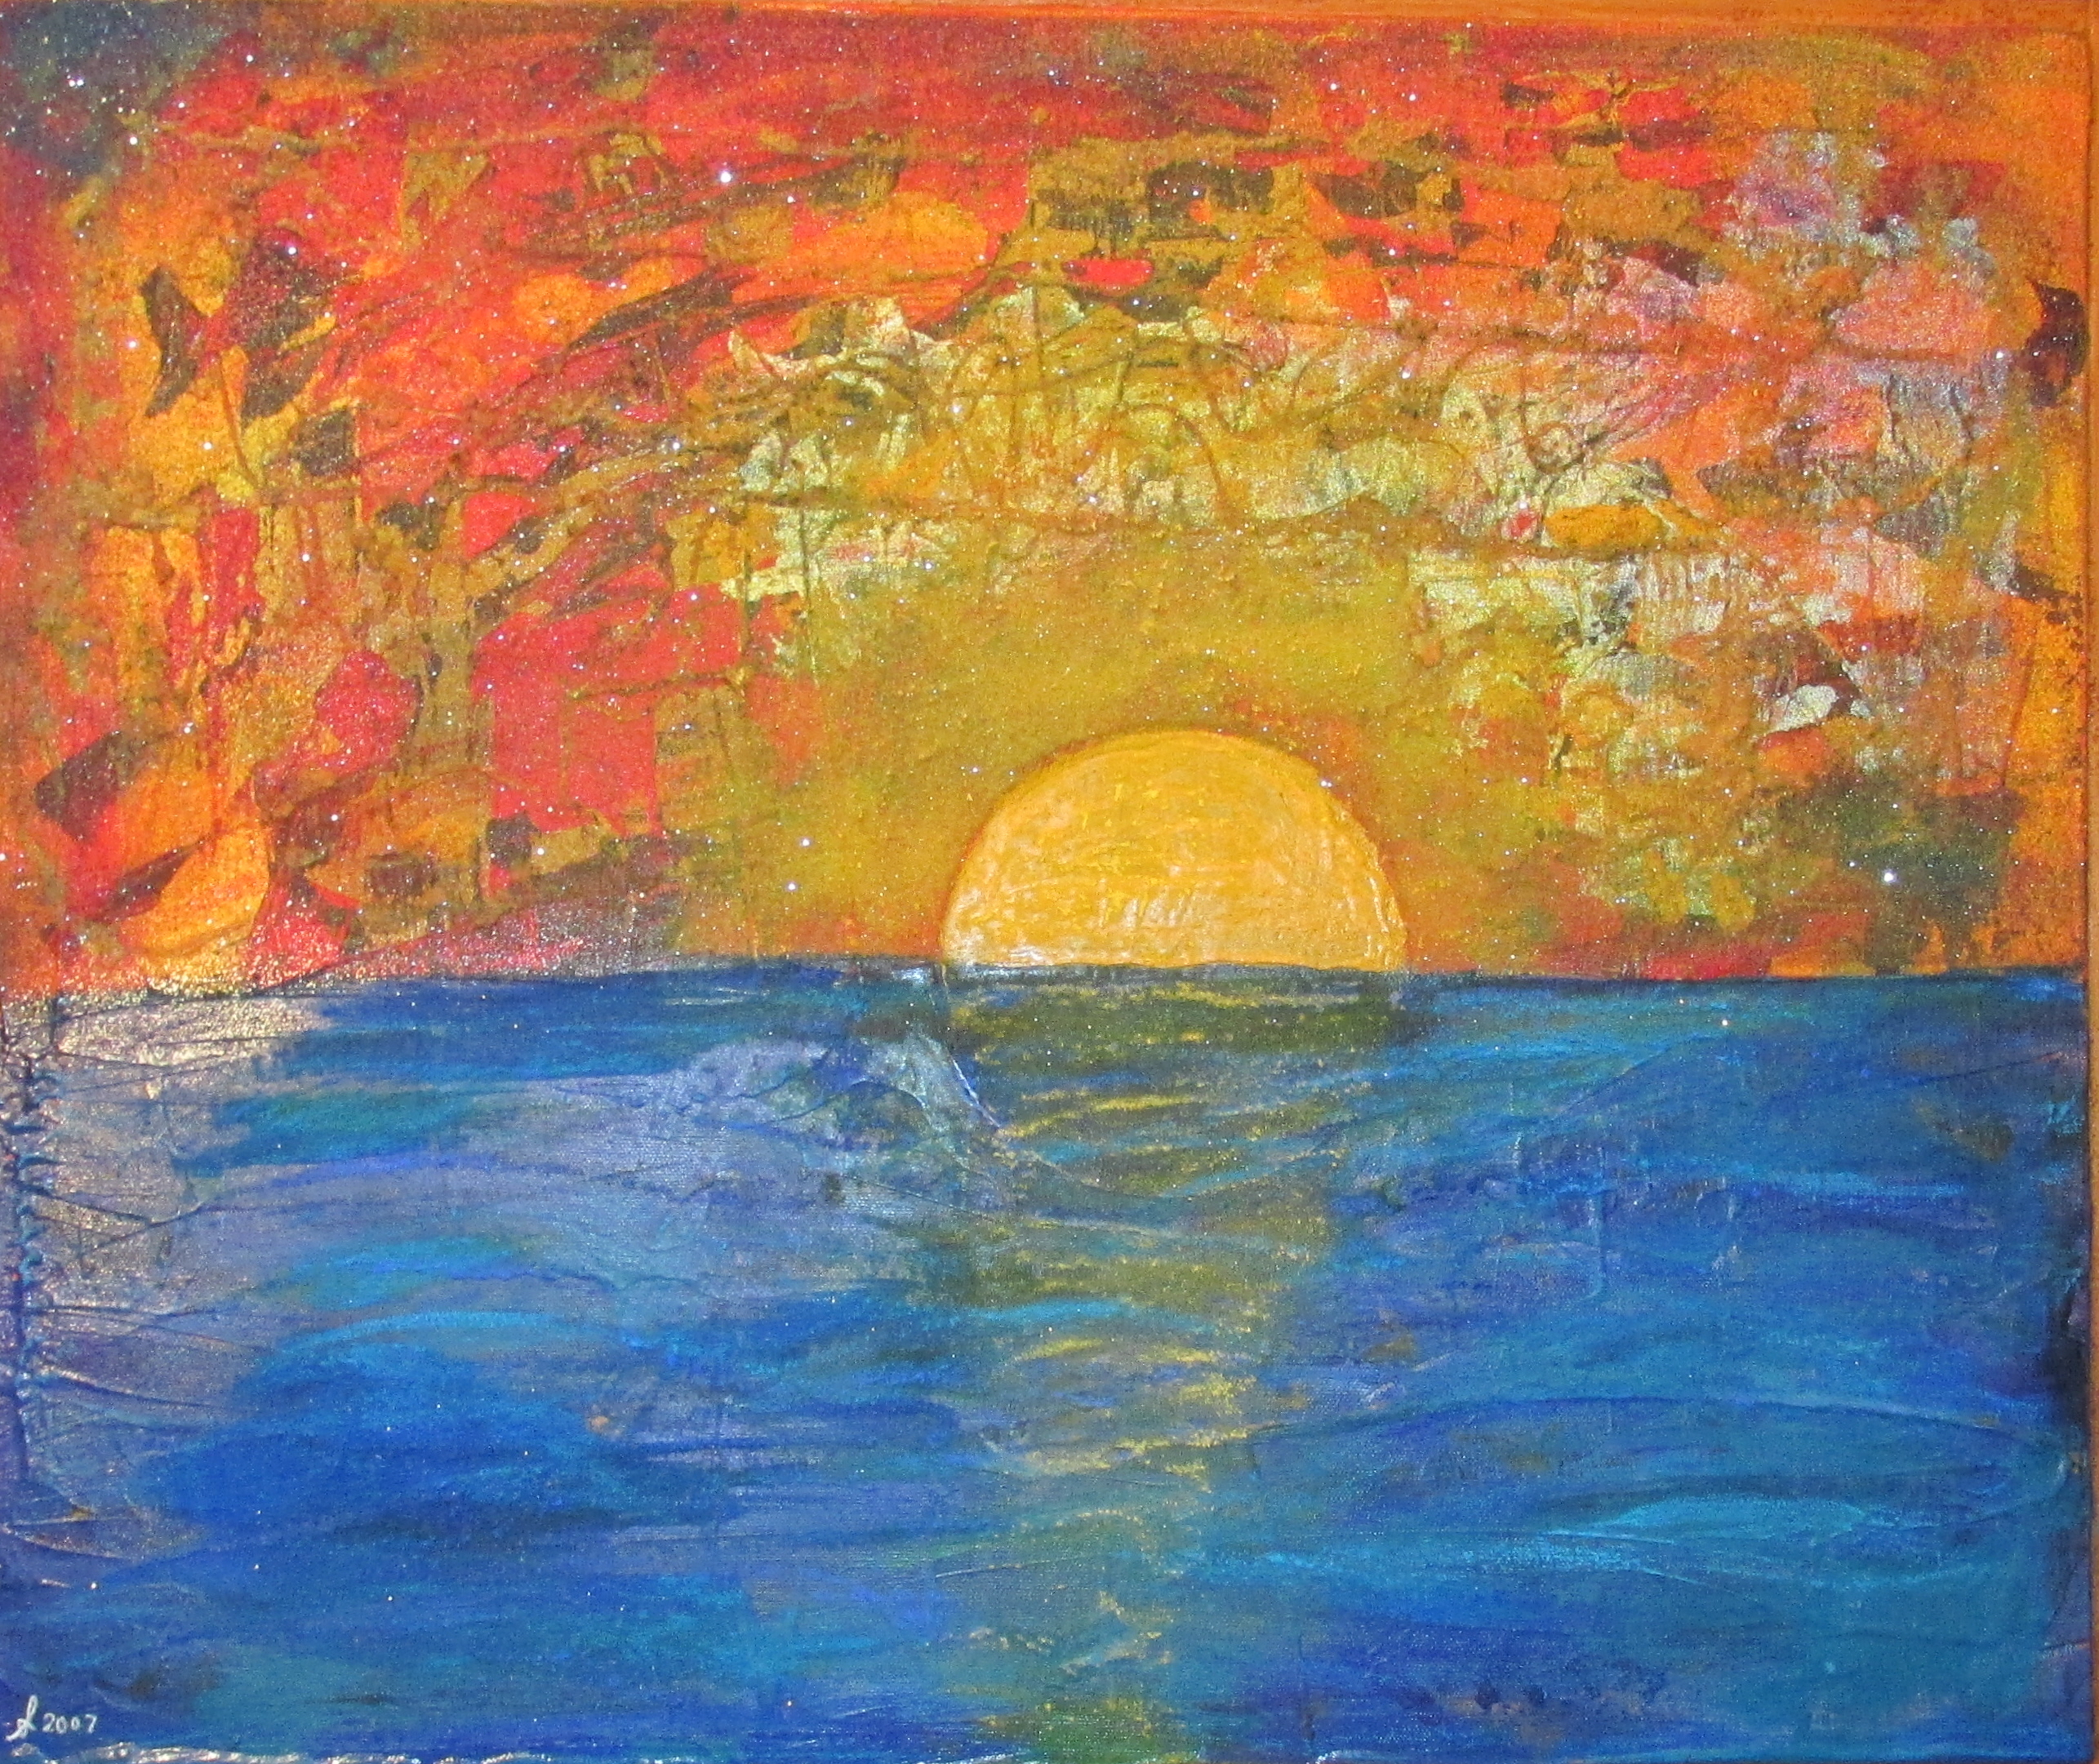 2007 Cancun Sun Rise